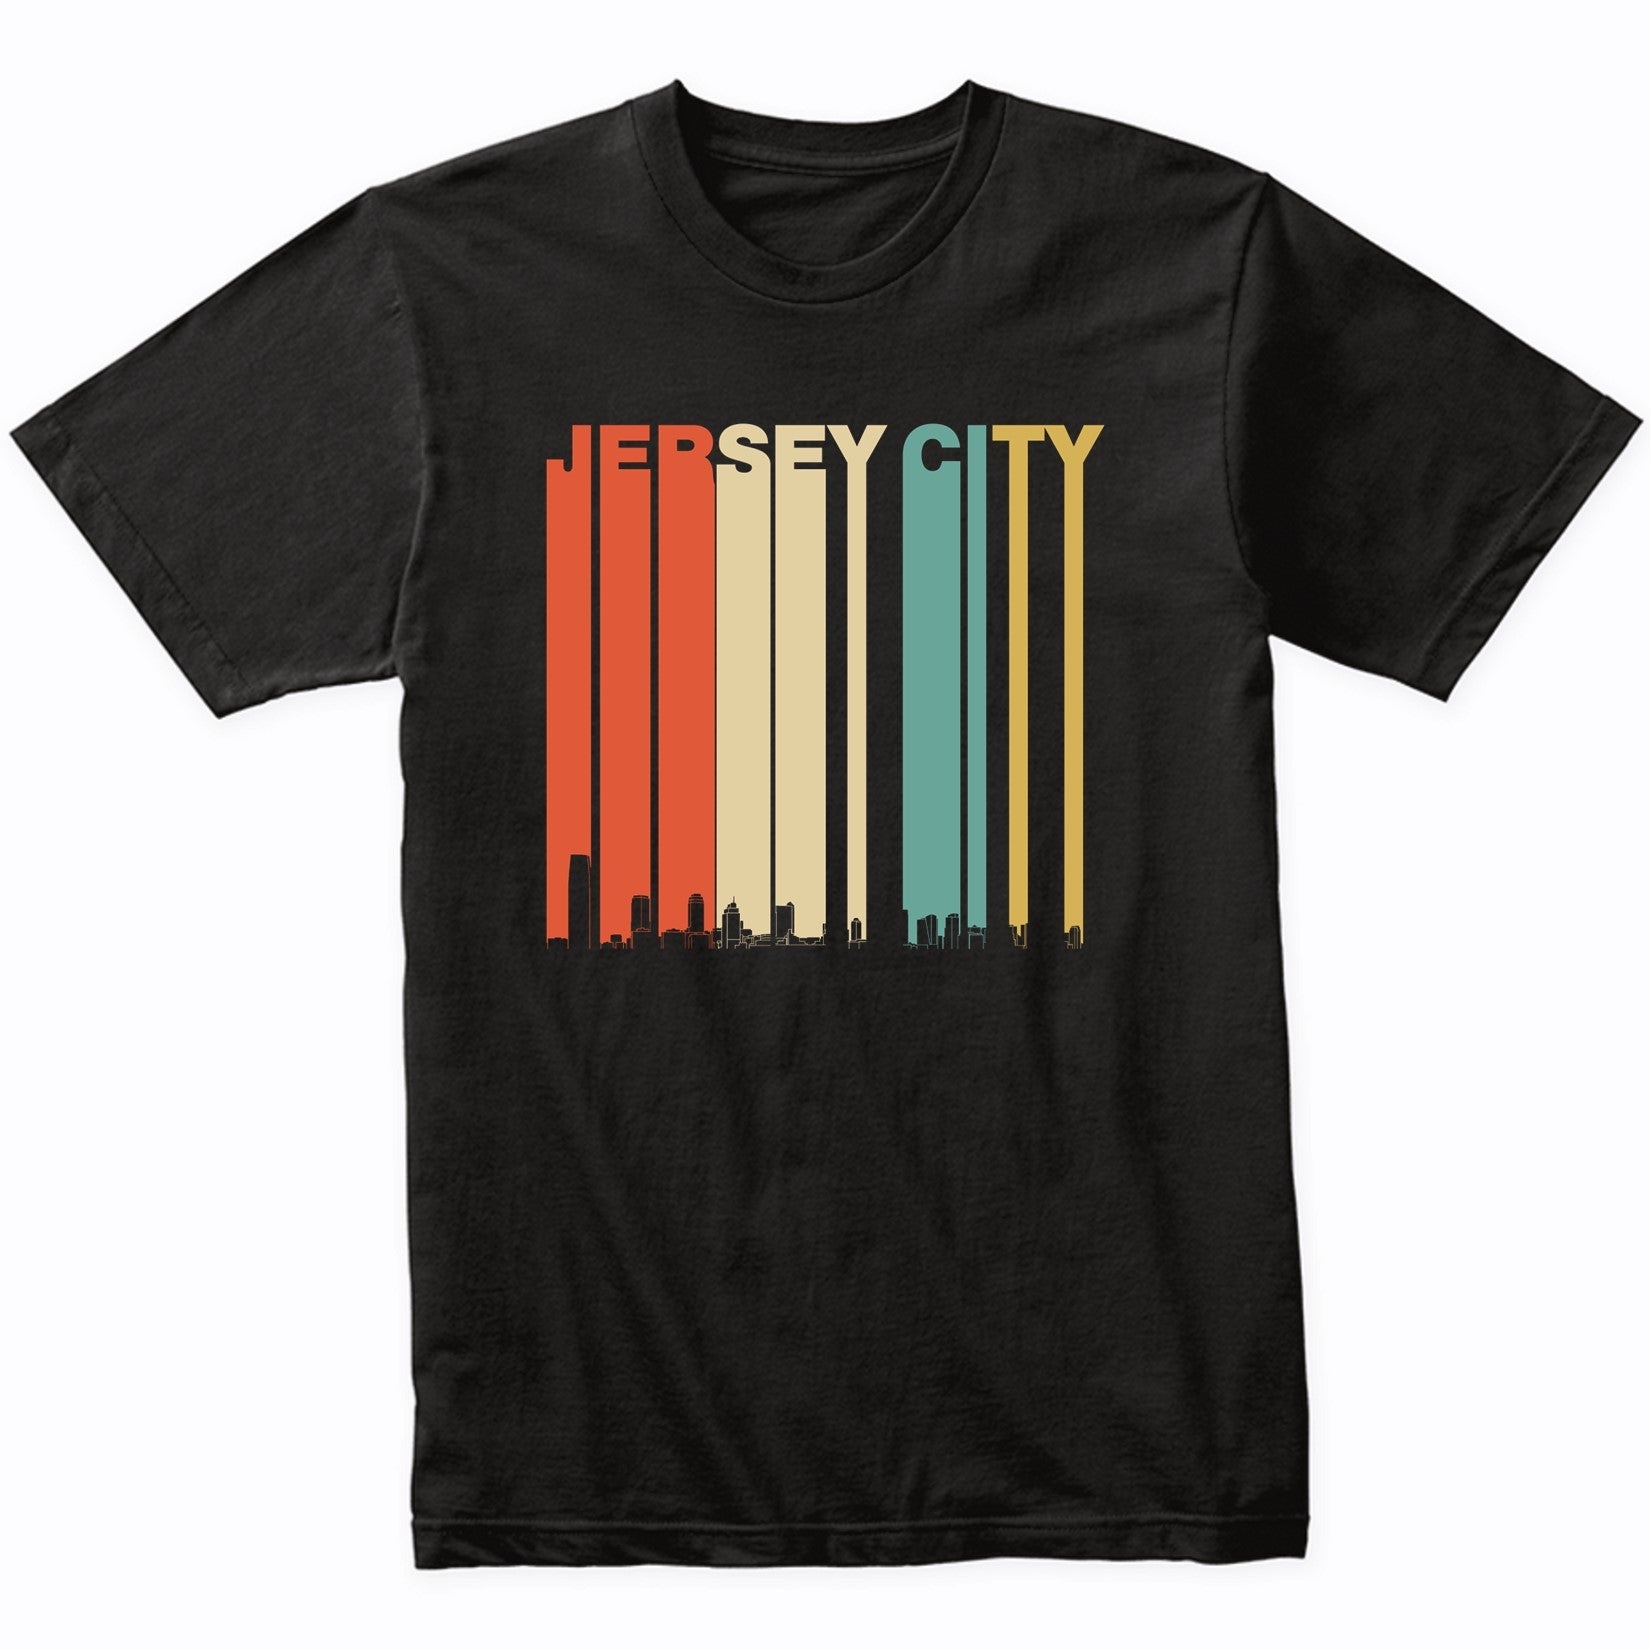 Vintage 1970's Style Jersey City New Jersey Skyline T-Shirt